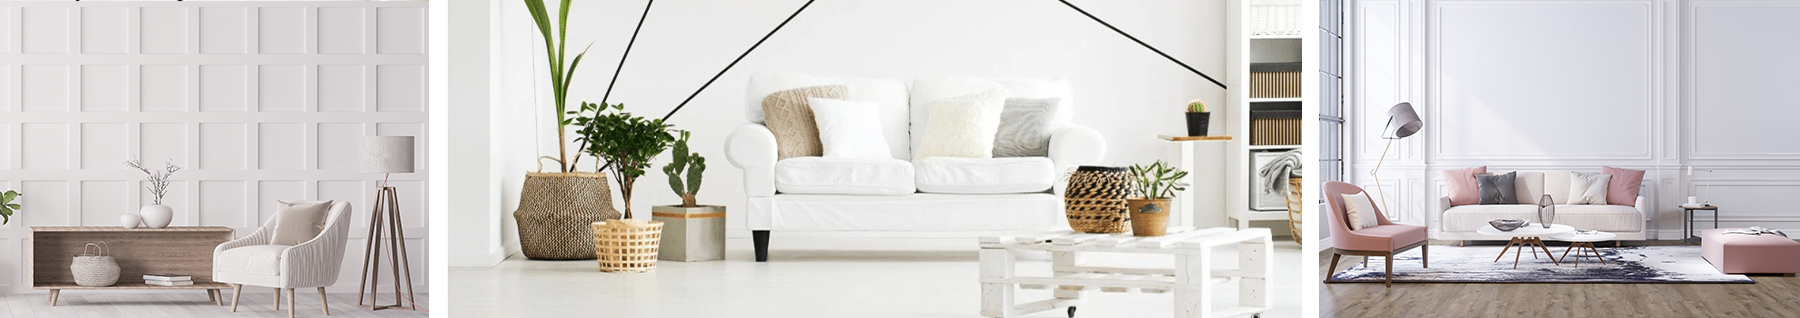 salon blanc intemporel et séjour blanc avec plante durable et salon ton neutre et pastel